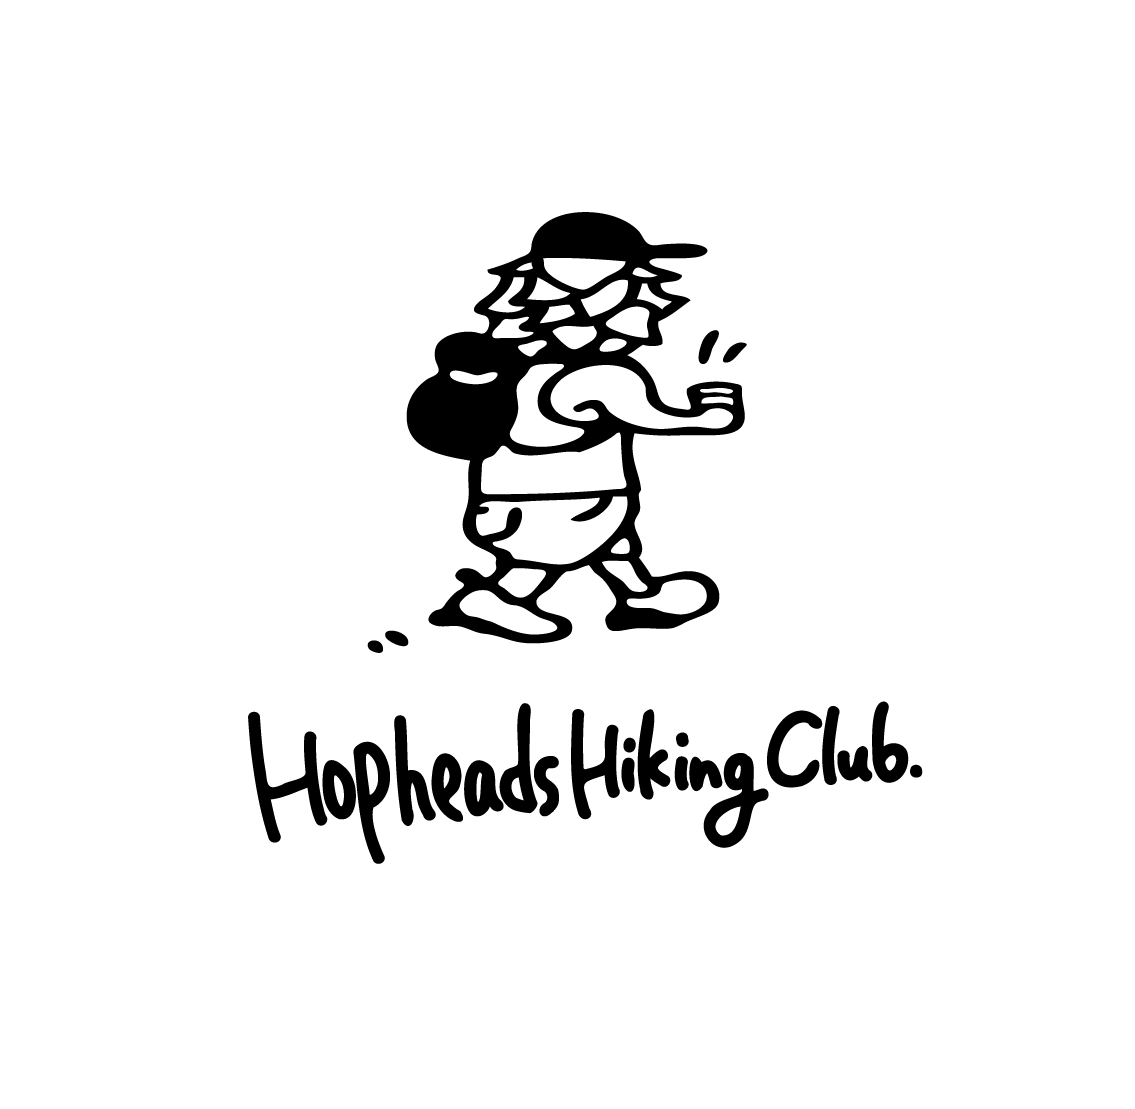 Hopheads Hiking Club